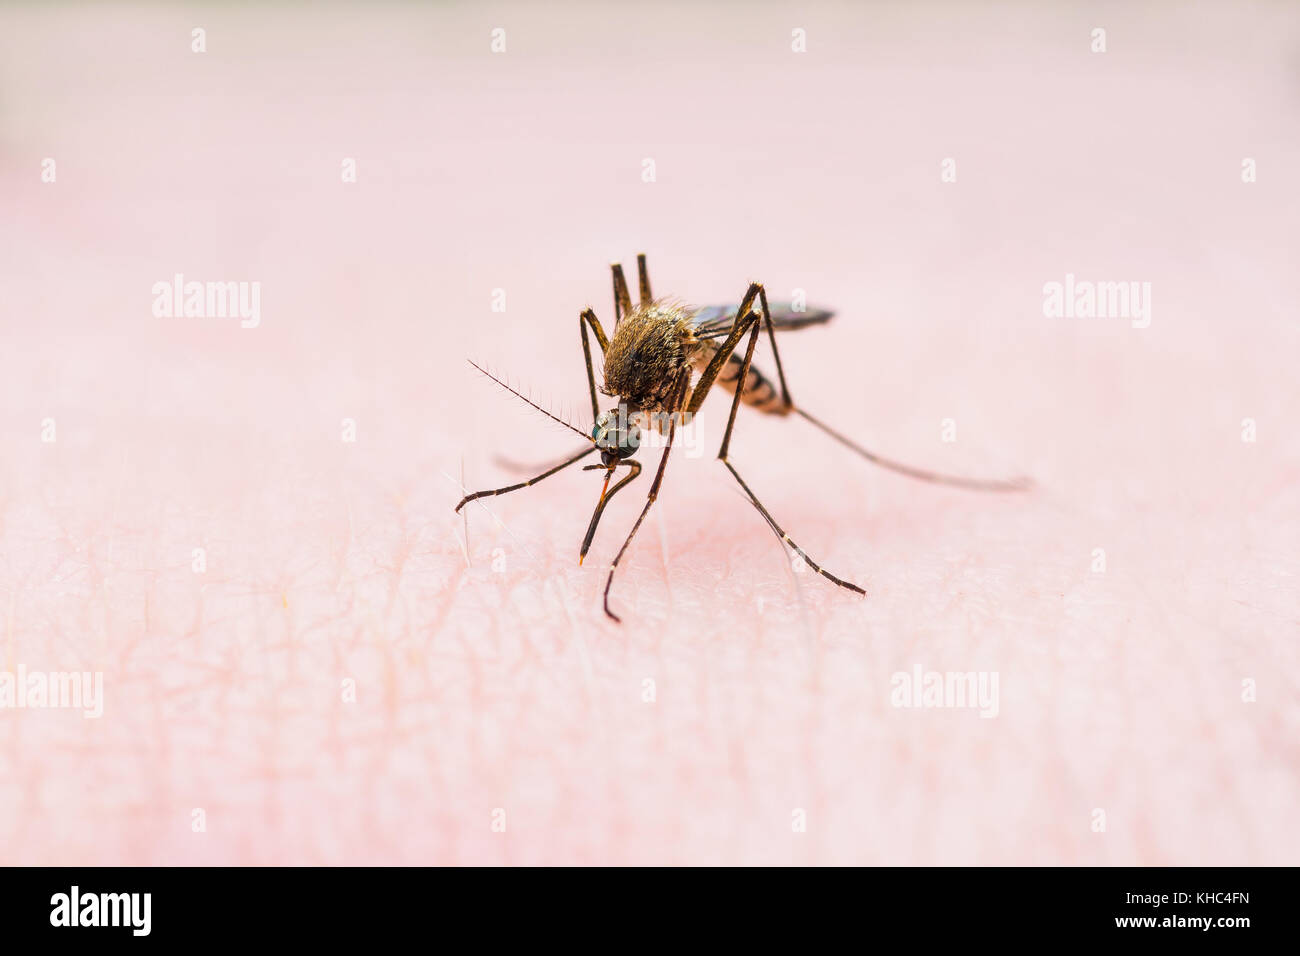 La febbre gialla, la malaria o virus zika zanzara infetta morso di insetto Foto Stock